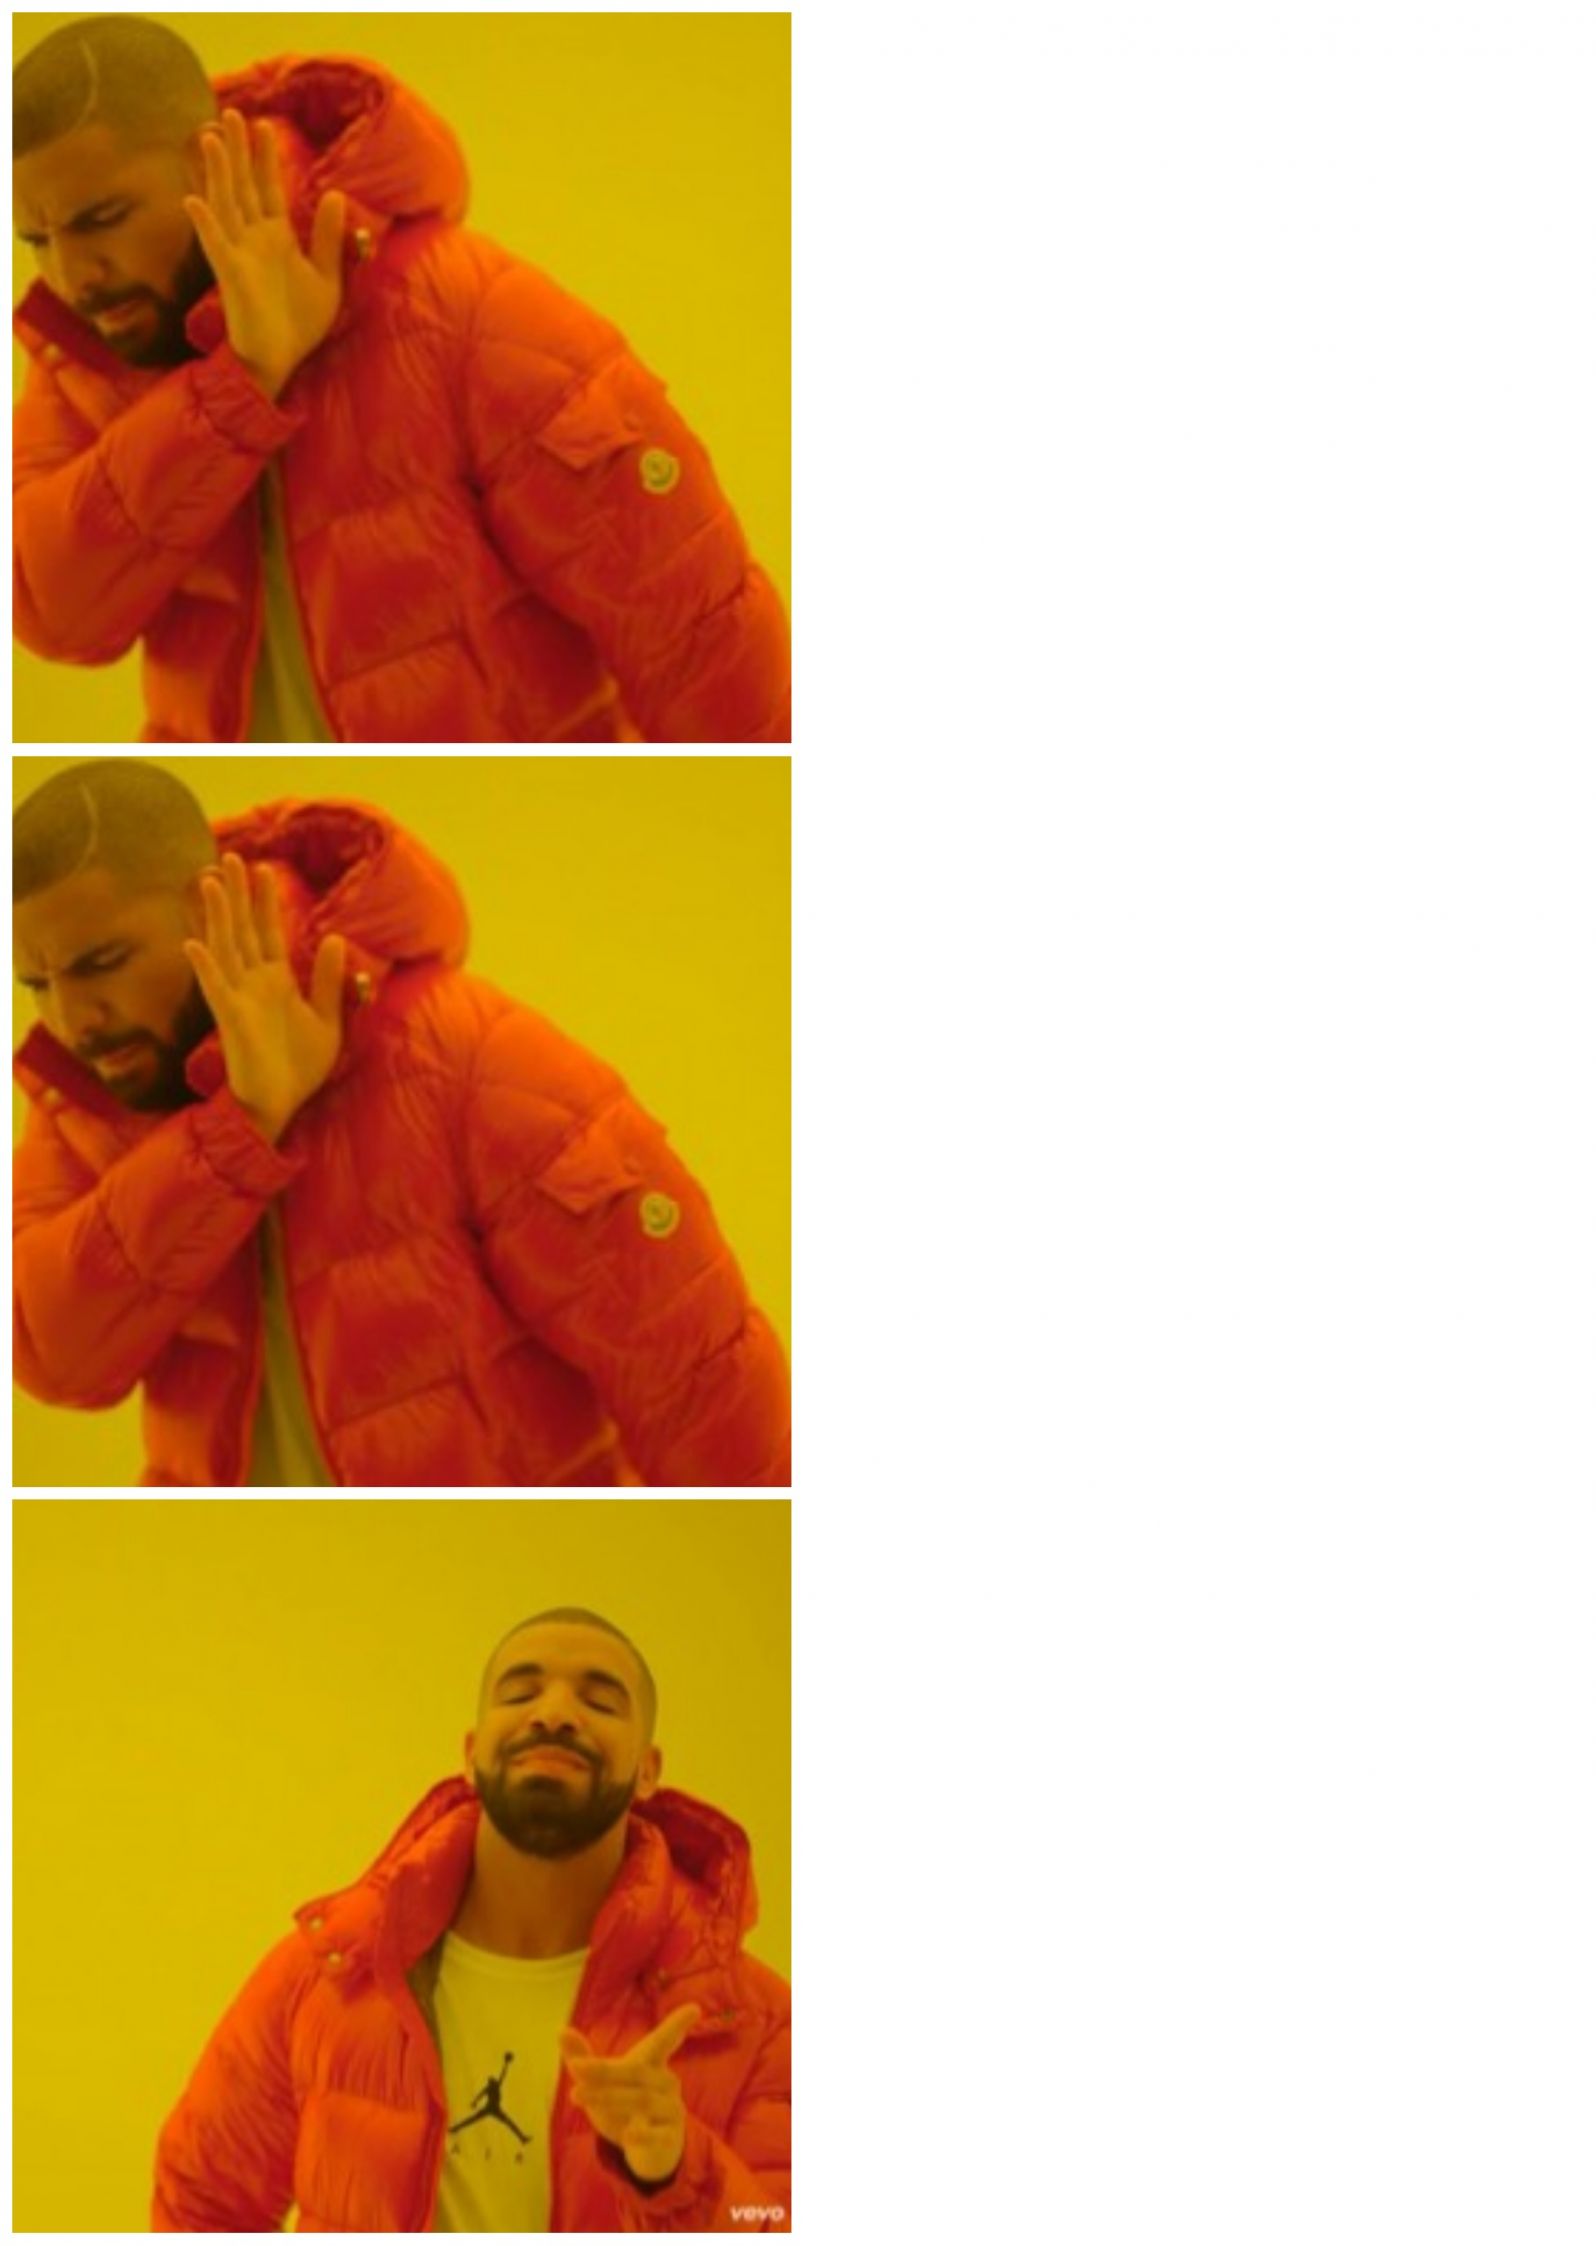 Drake 3 cases Blank Meme Template